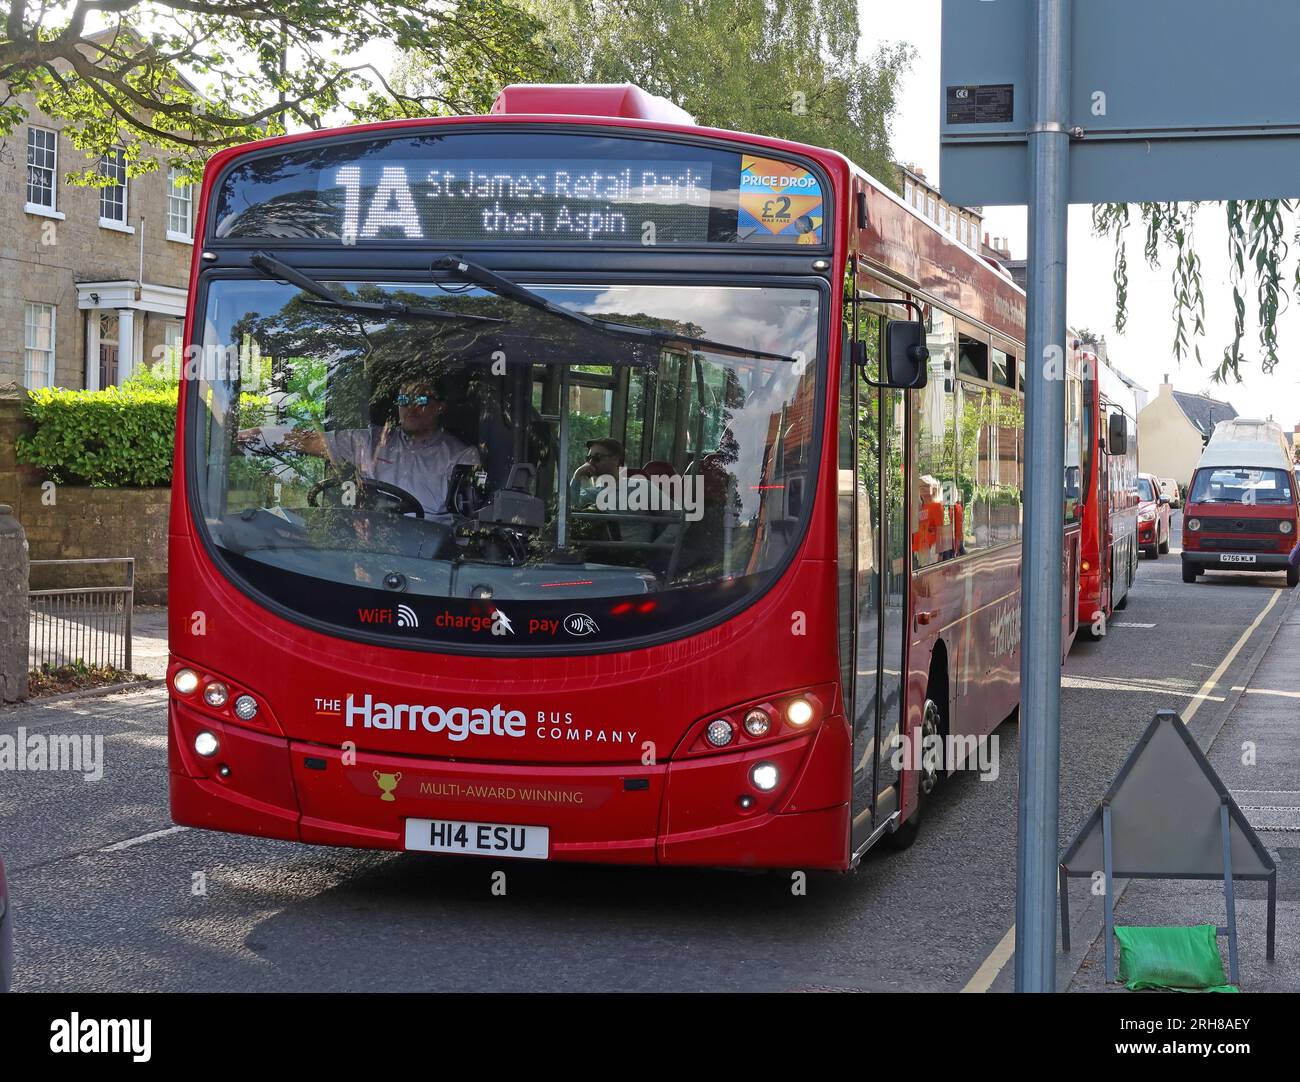 Harrogate bus Company bus 1a transports publics, dans le centre-ville de Knaresborough, H14 ESU, North Yorkshire, Angleterre, Royaume-Uni, HG5 0AA Banque D'Images